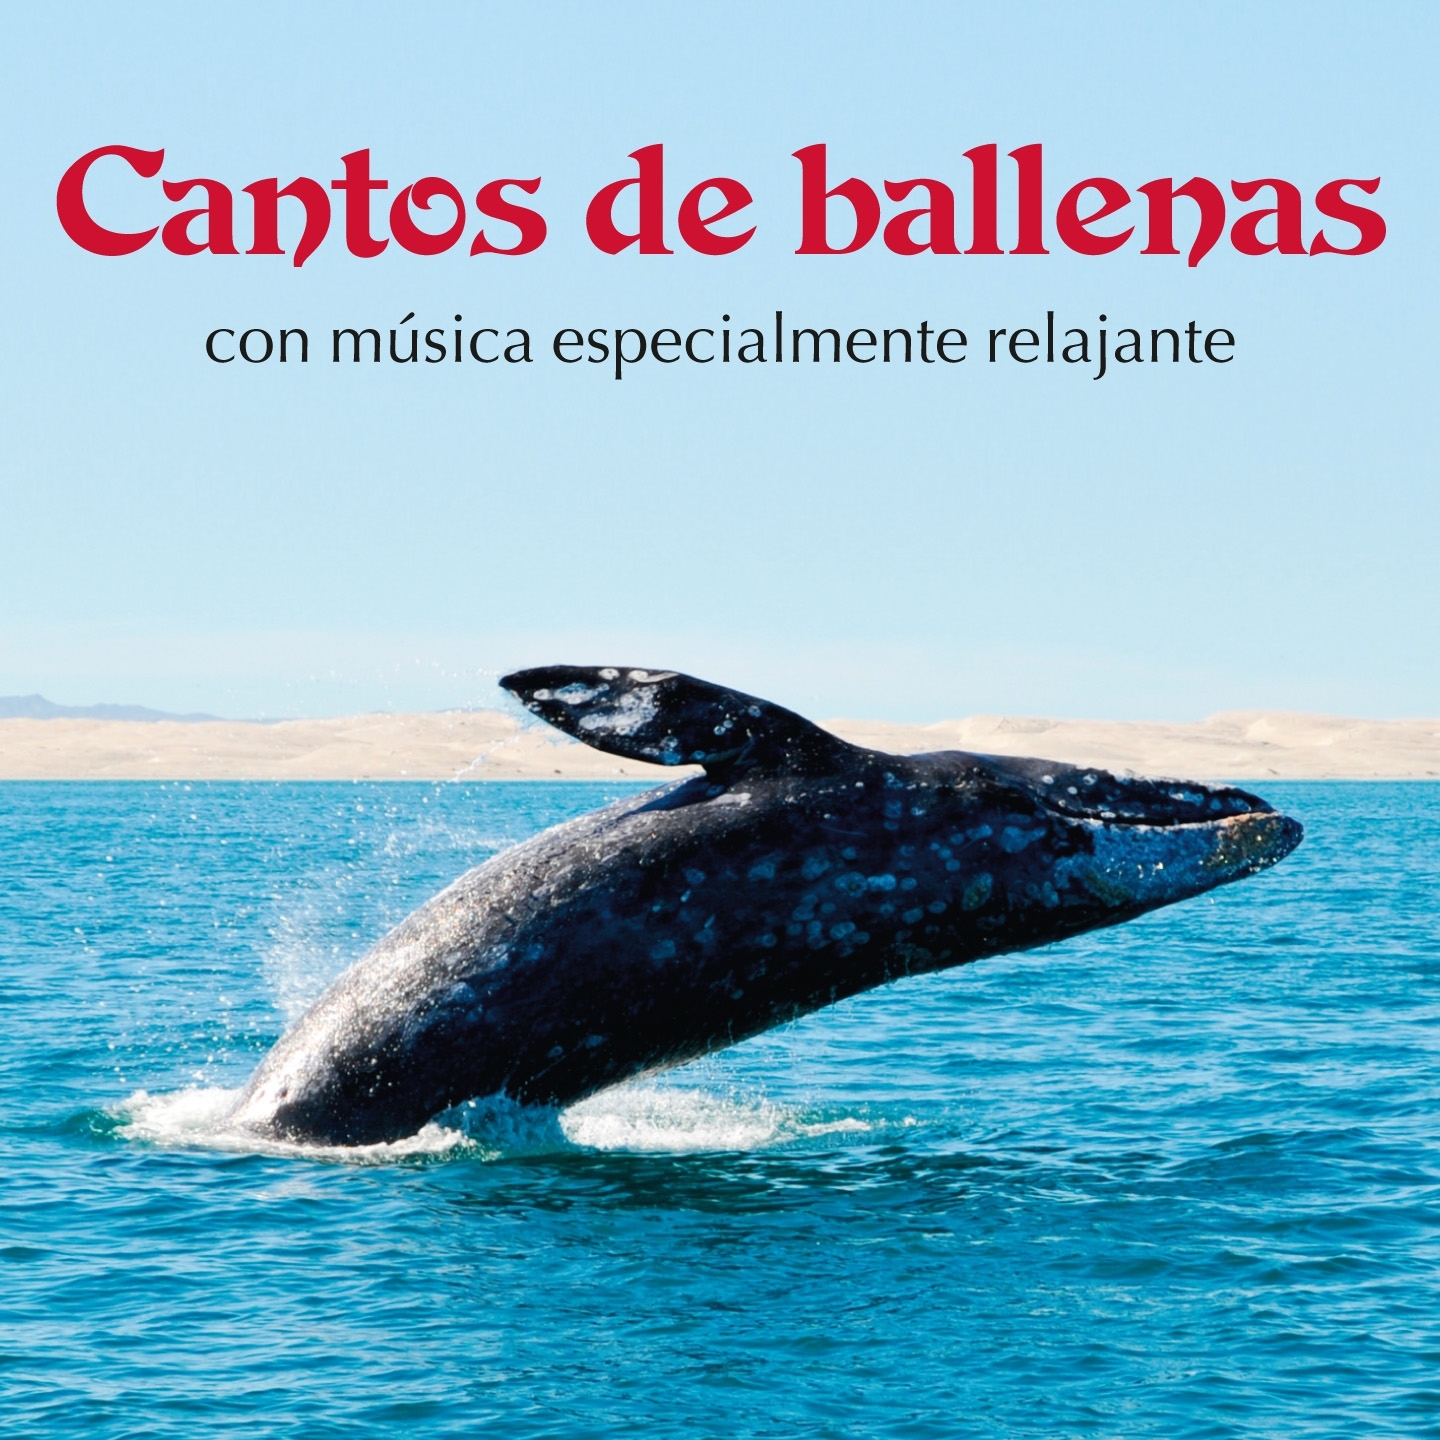 Canciones de las Ballenas Maravillosamente  paci ficas, Pt. 1